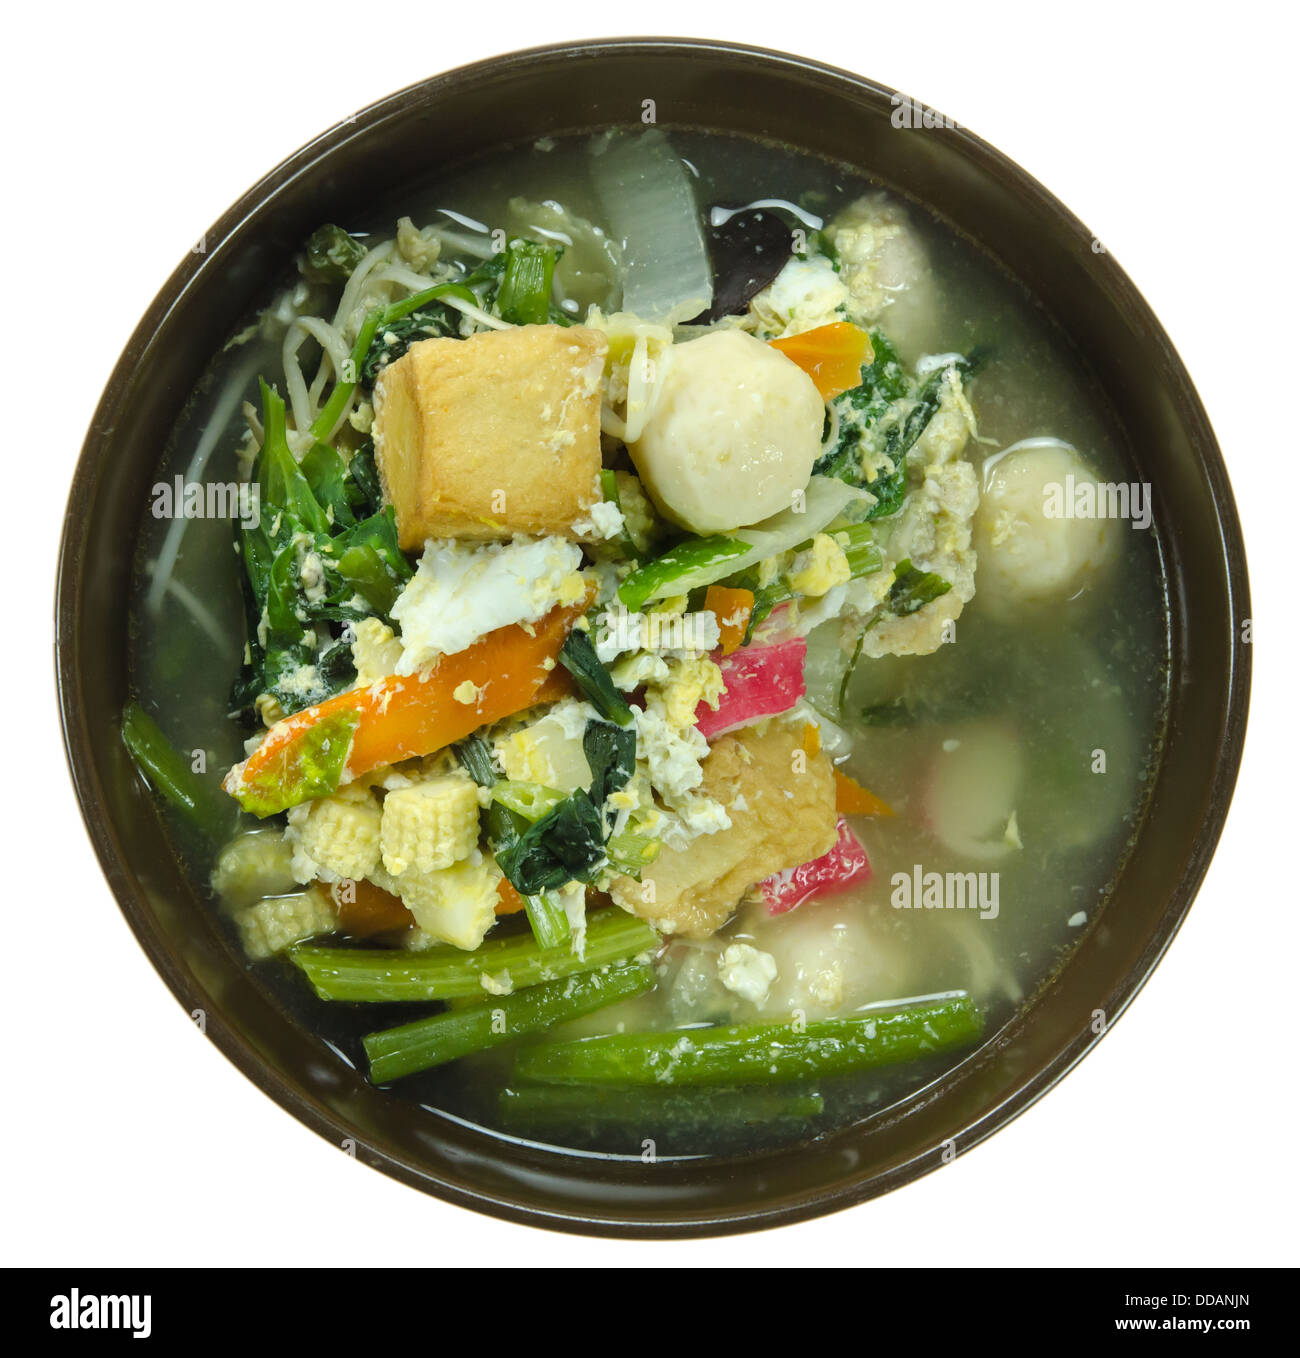 Top View asiatische Suppe mit Schweinefleisch, Frikadellen, Ei und Gemüse mischen Stockfoto